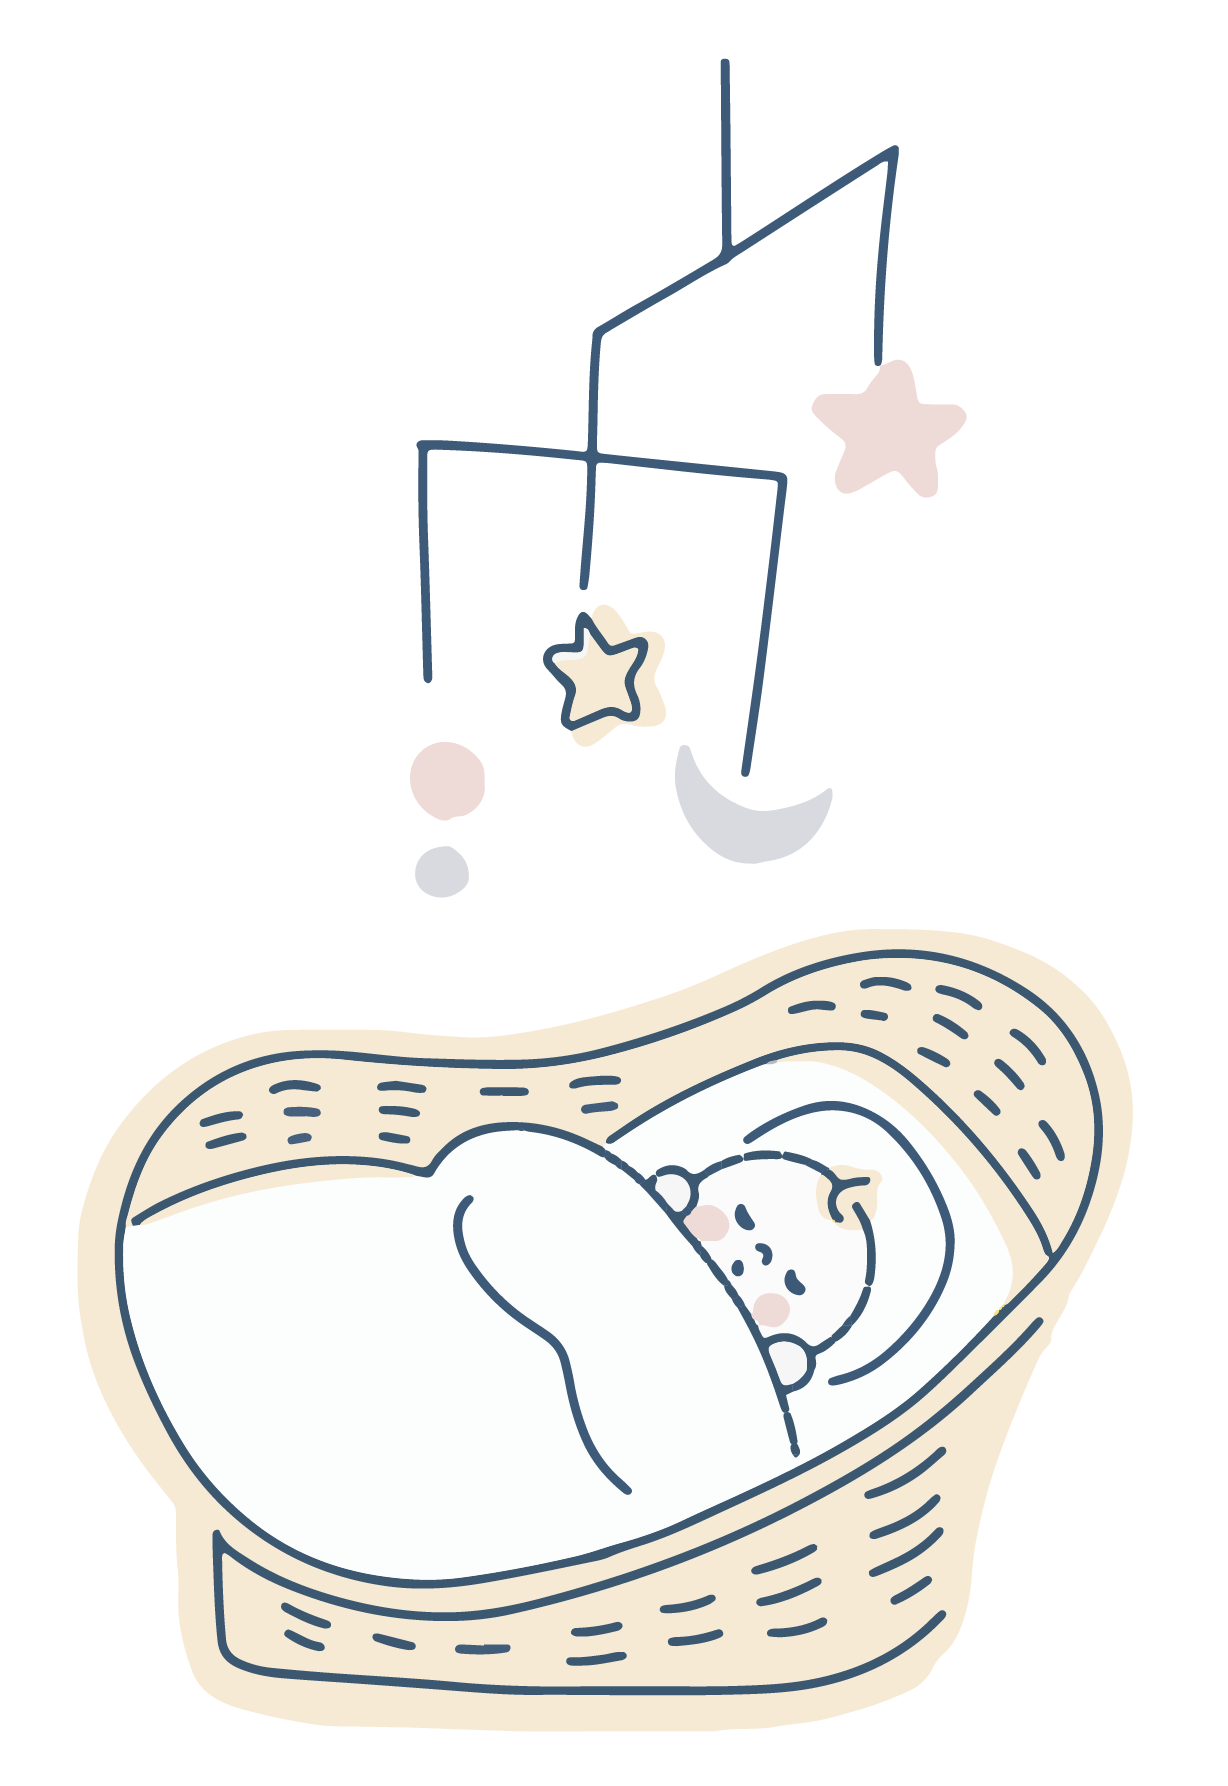 Illustration eines Babys in der Wiege, darüber ein Mobile